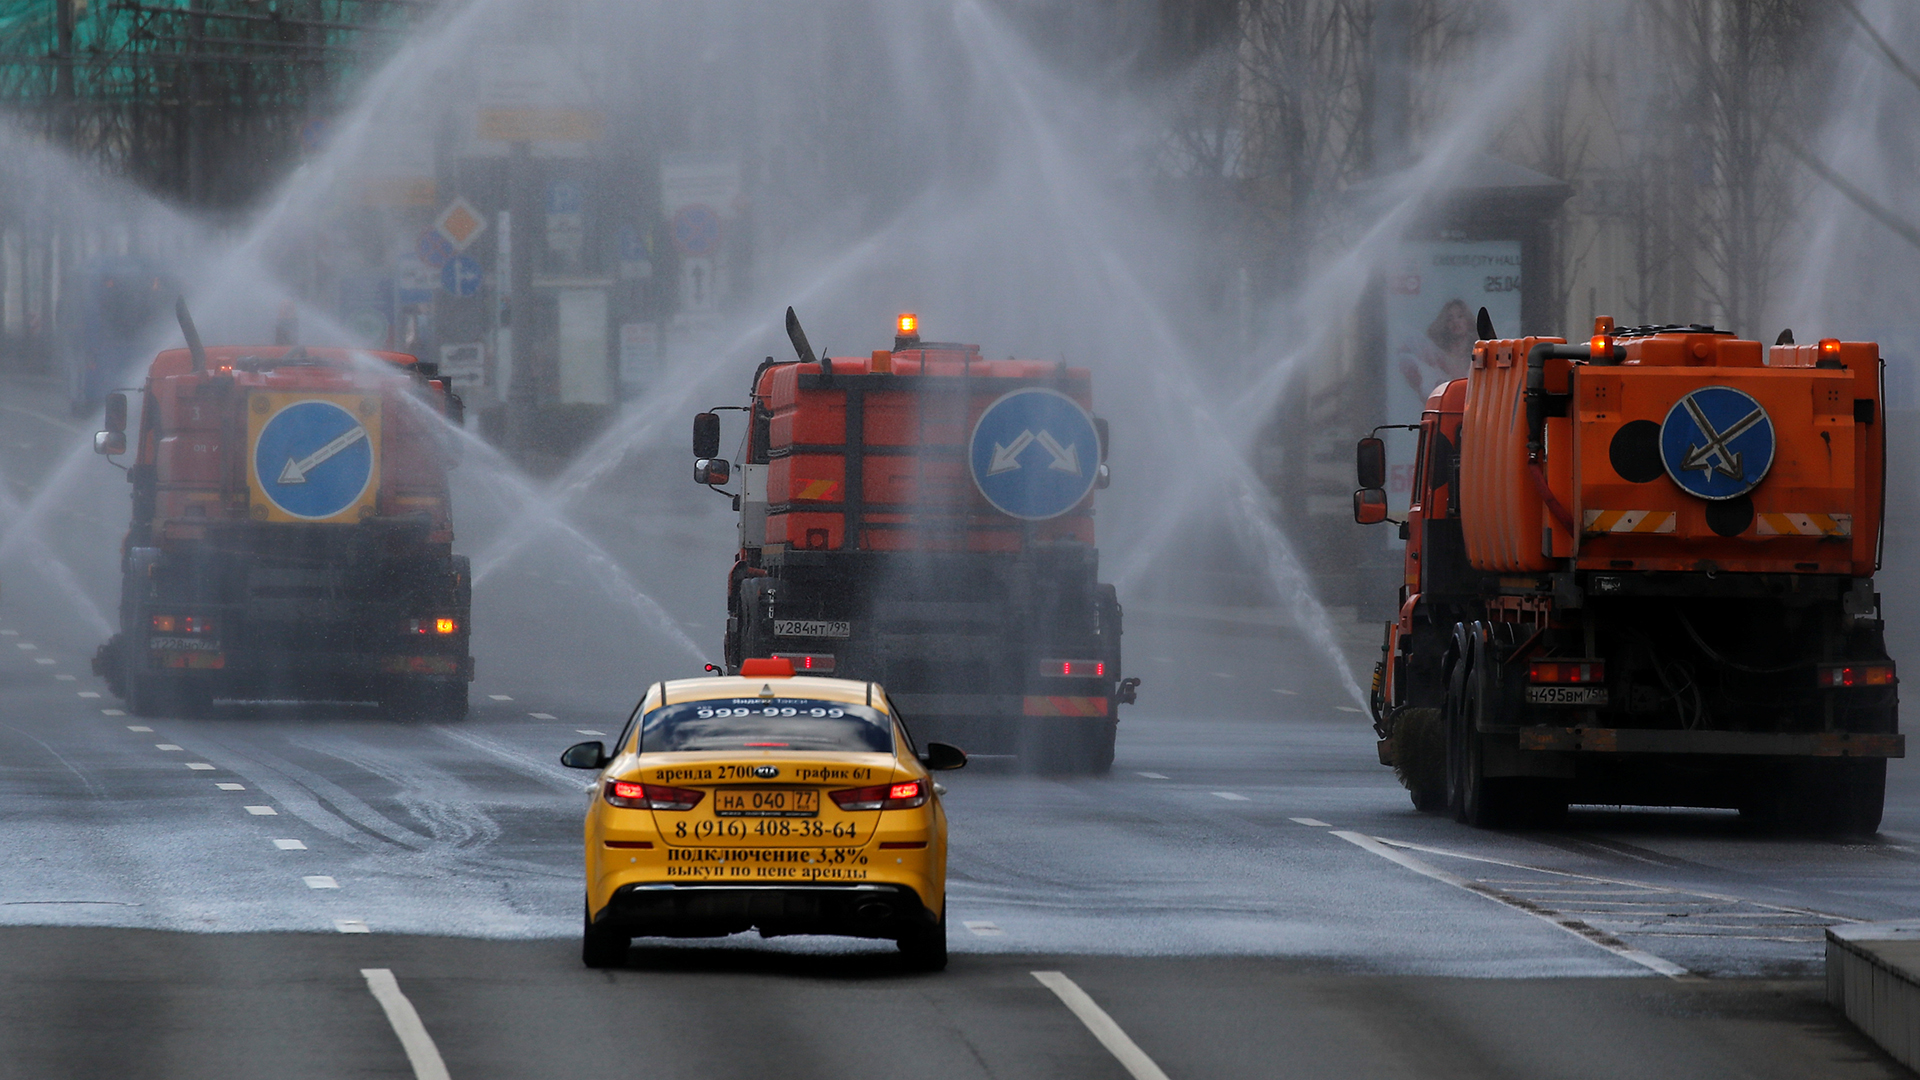 Fahrzeuge sprühen Desinfektionsmittel auf die Straßen Moskaus, um die Ausbreitung des Coronavirus zu stoppen. | REUTERS